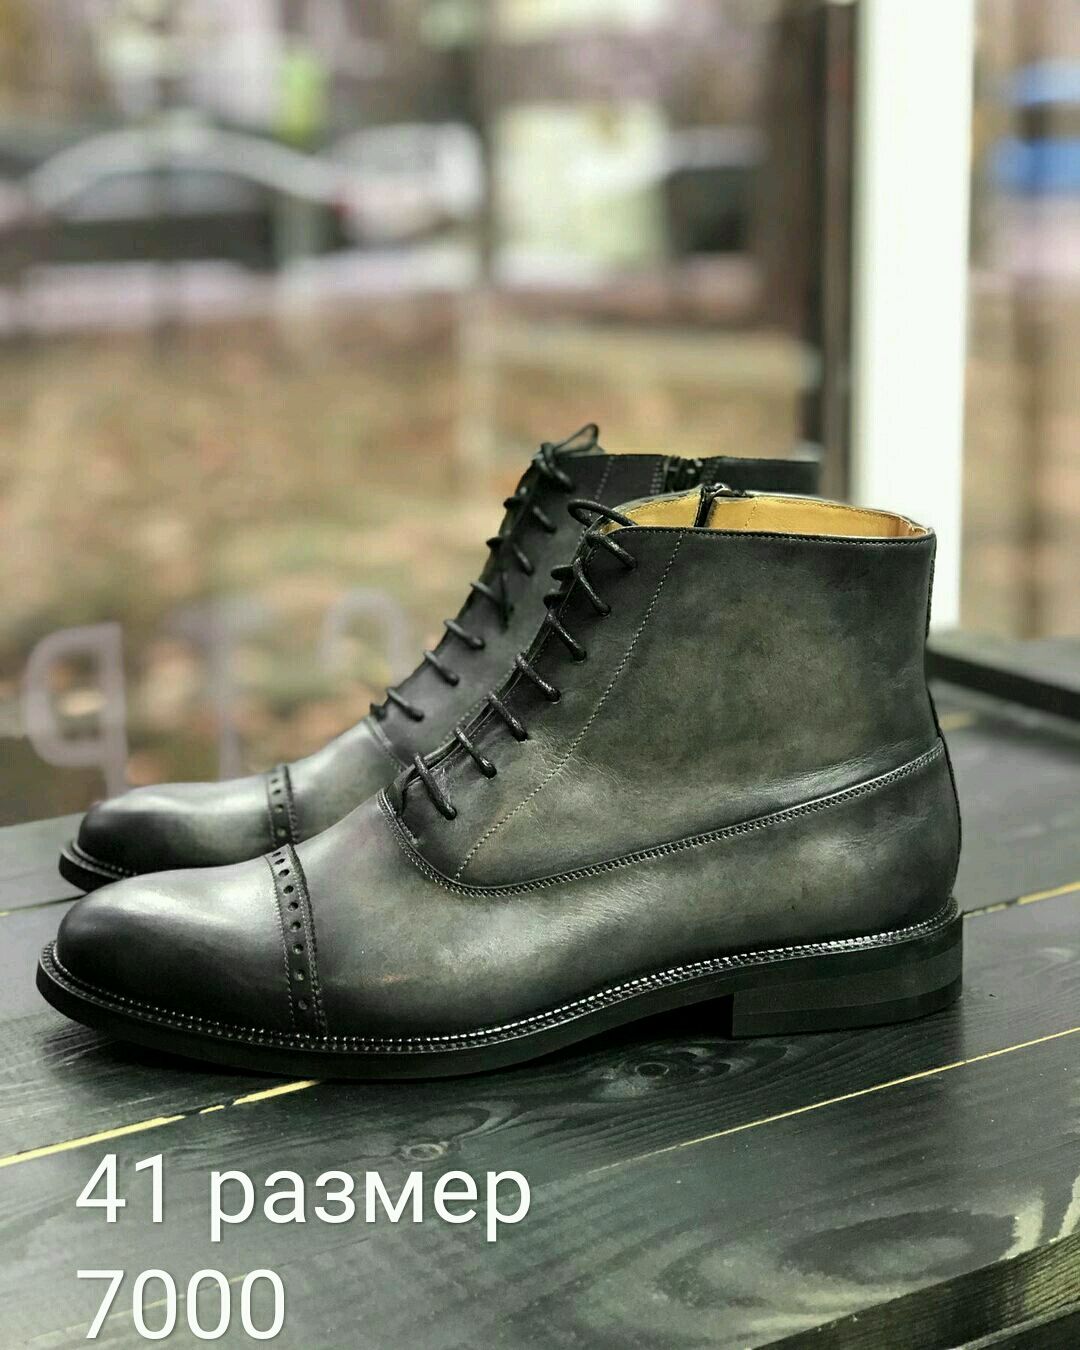 Ботинки с ручной покраской купить в интернет-магазине Ярмарка Мас��еров поцене 7000 ₽ – OZC4URU